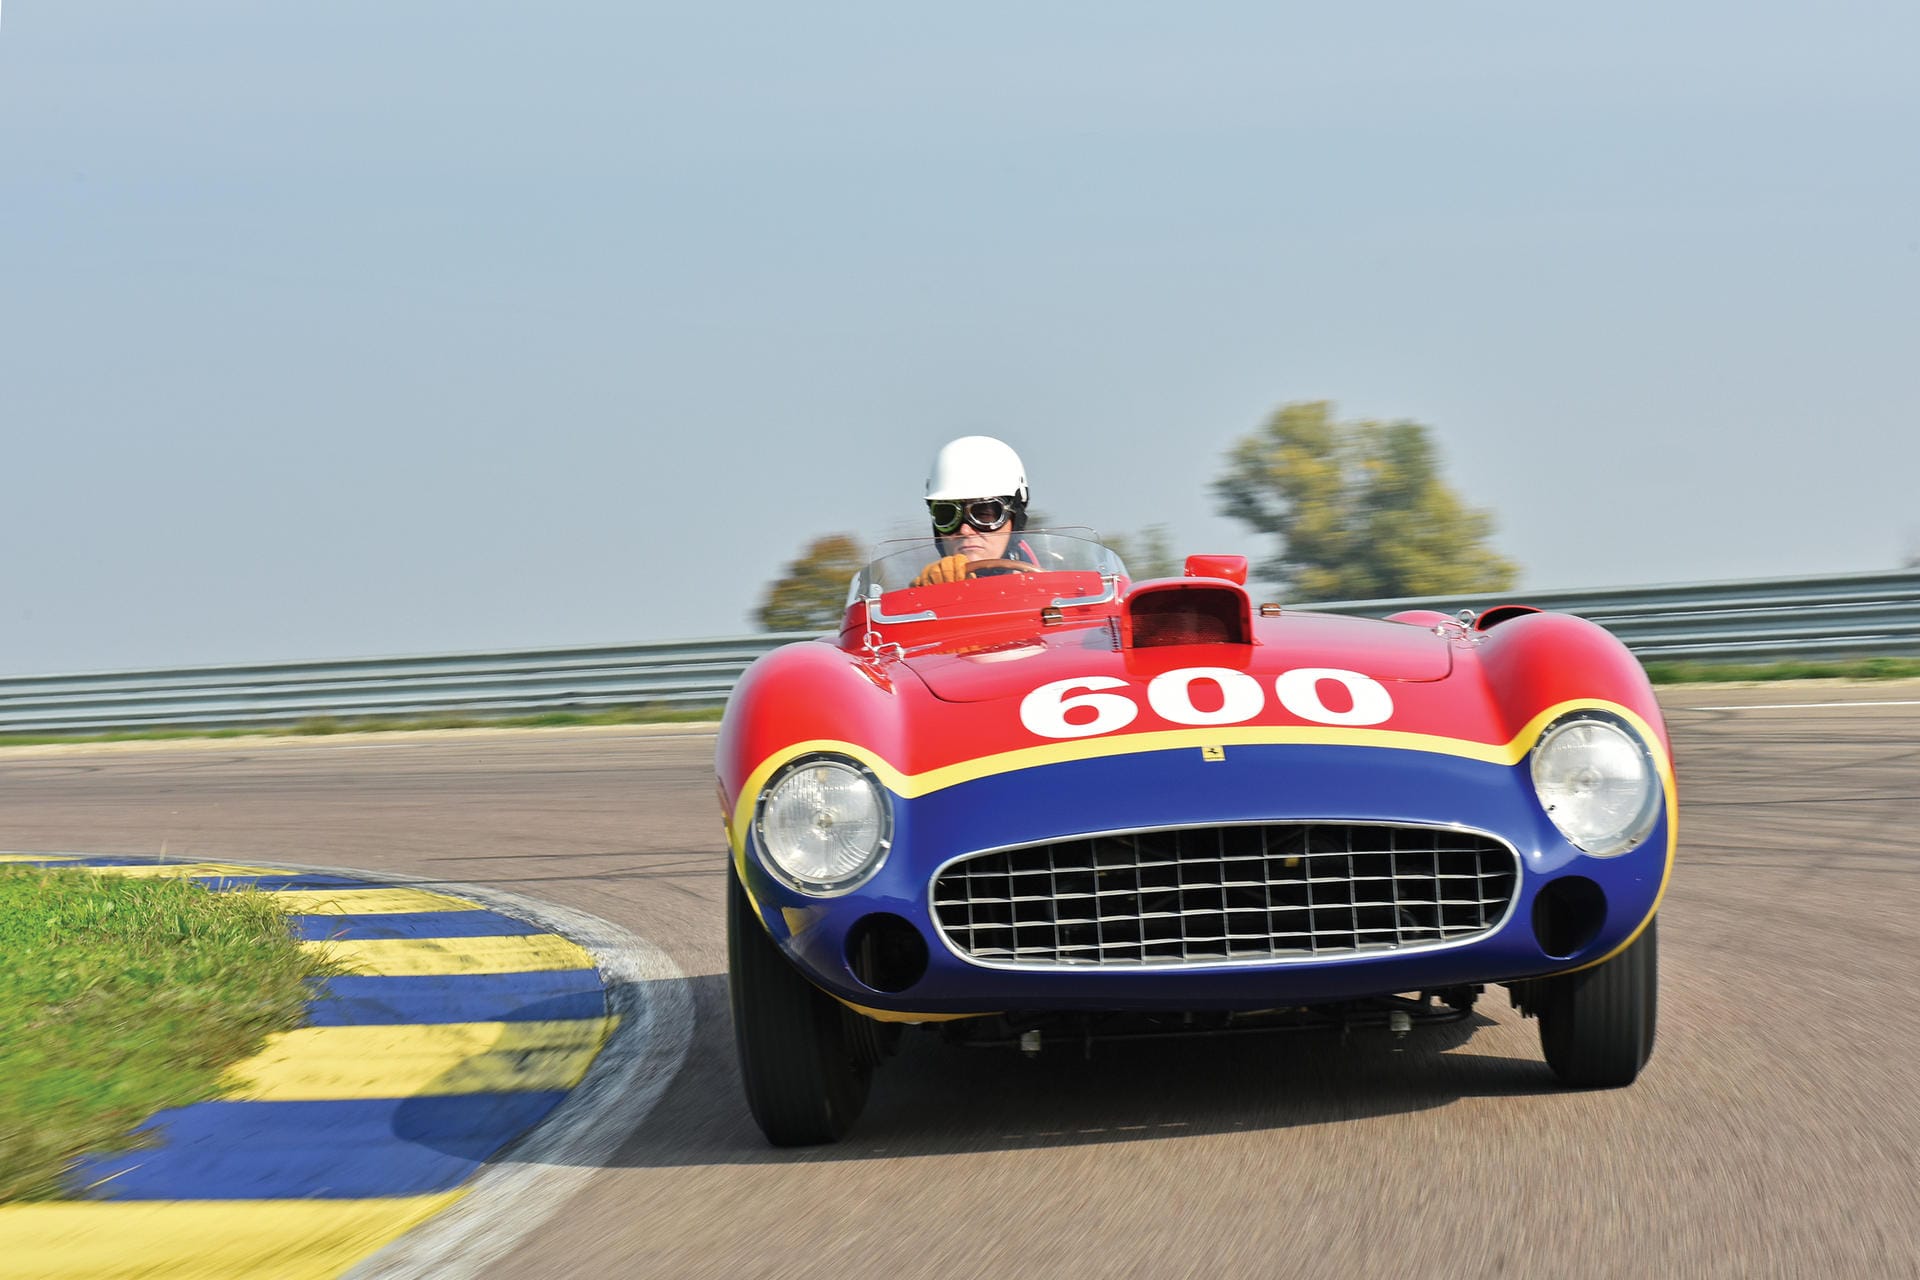 Auf den vierten Rang stieß im Dezember 2015 bei einer Auktion in New York ein Ferrari 290 MM aus dem Jahr 1956 vor. Der Sportwagen wurde für Formel-1-Legende Juan Manuel Fangio gebaut. 28 Millionen US-Dollar (rund 25,6 Millionen Euro) erlöste der Bolide.